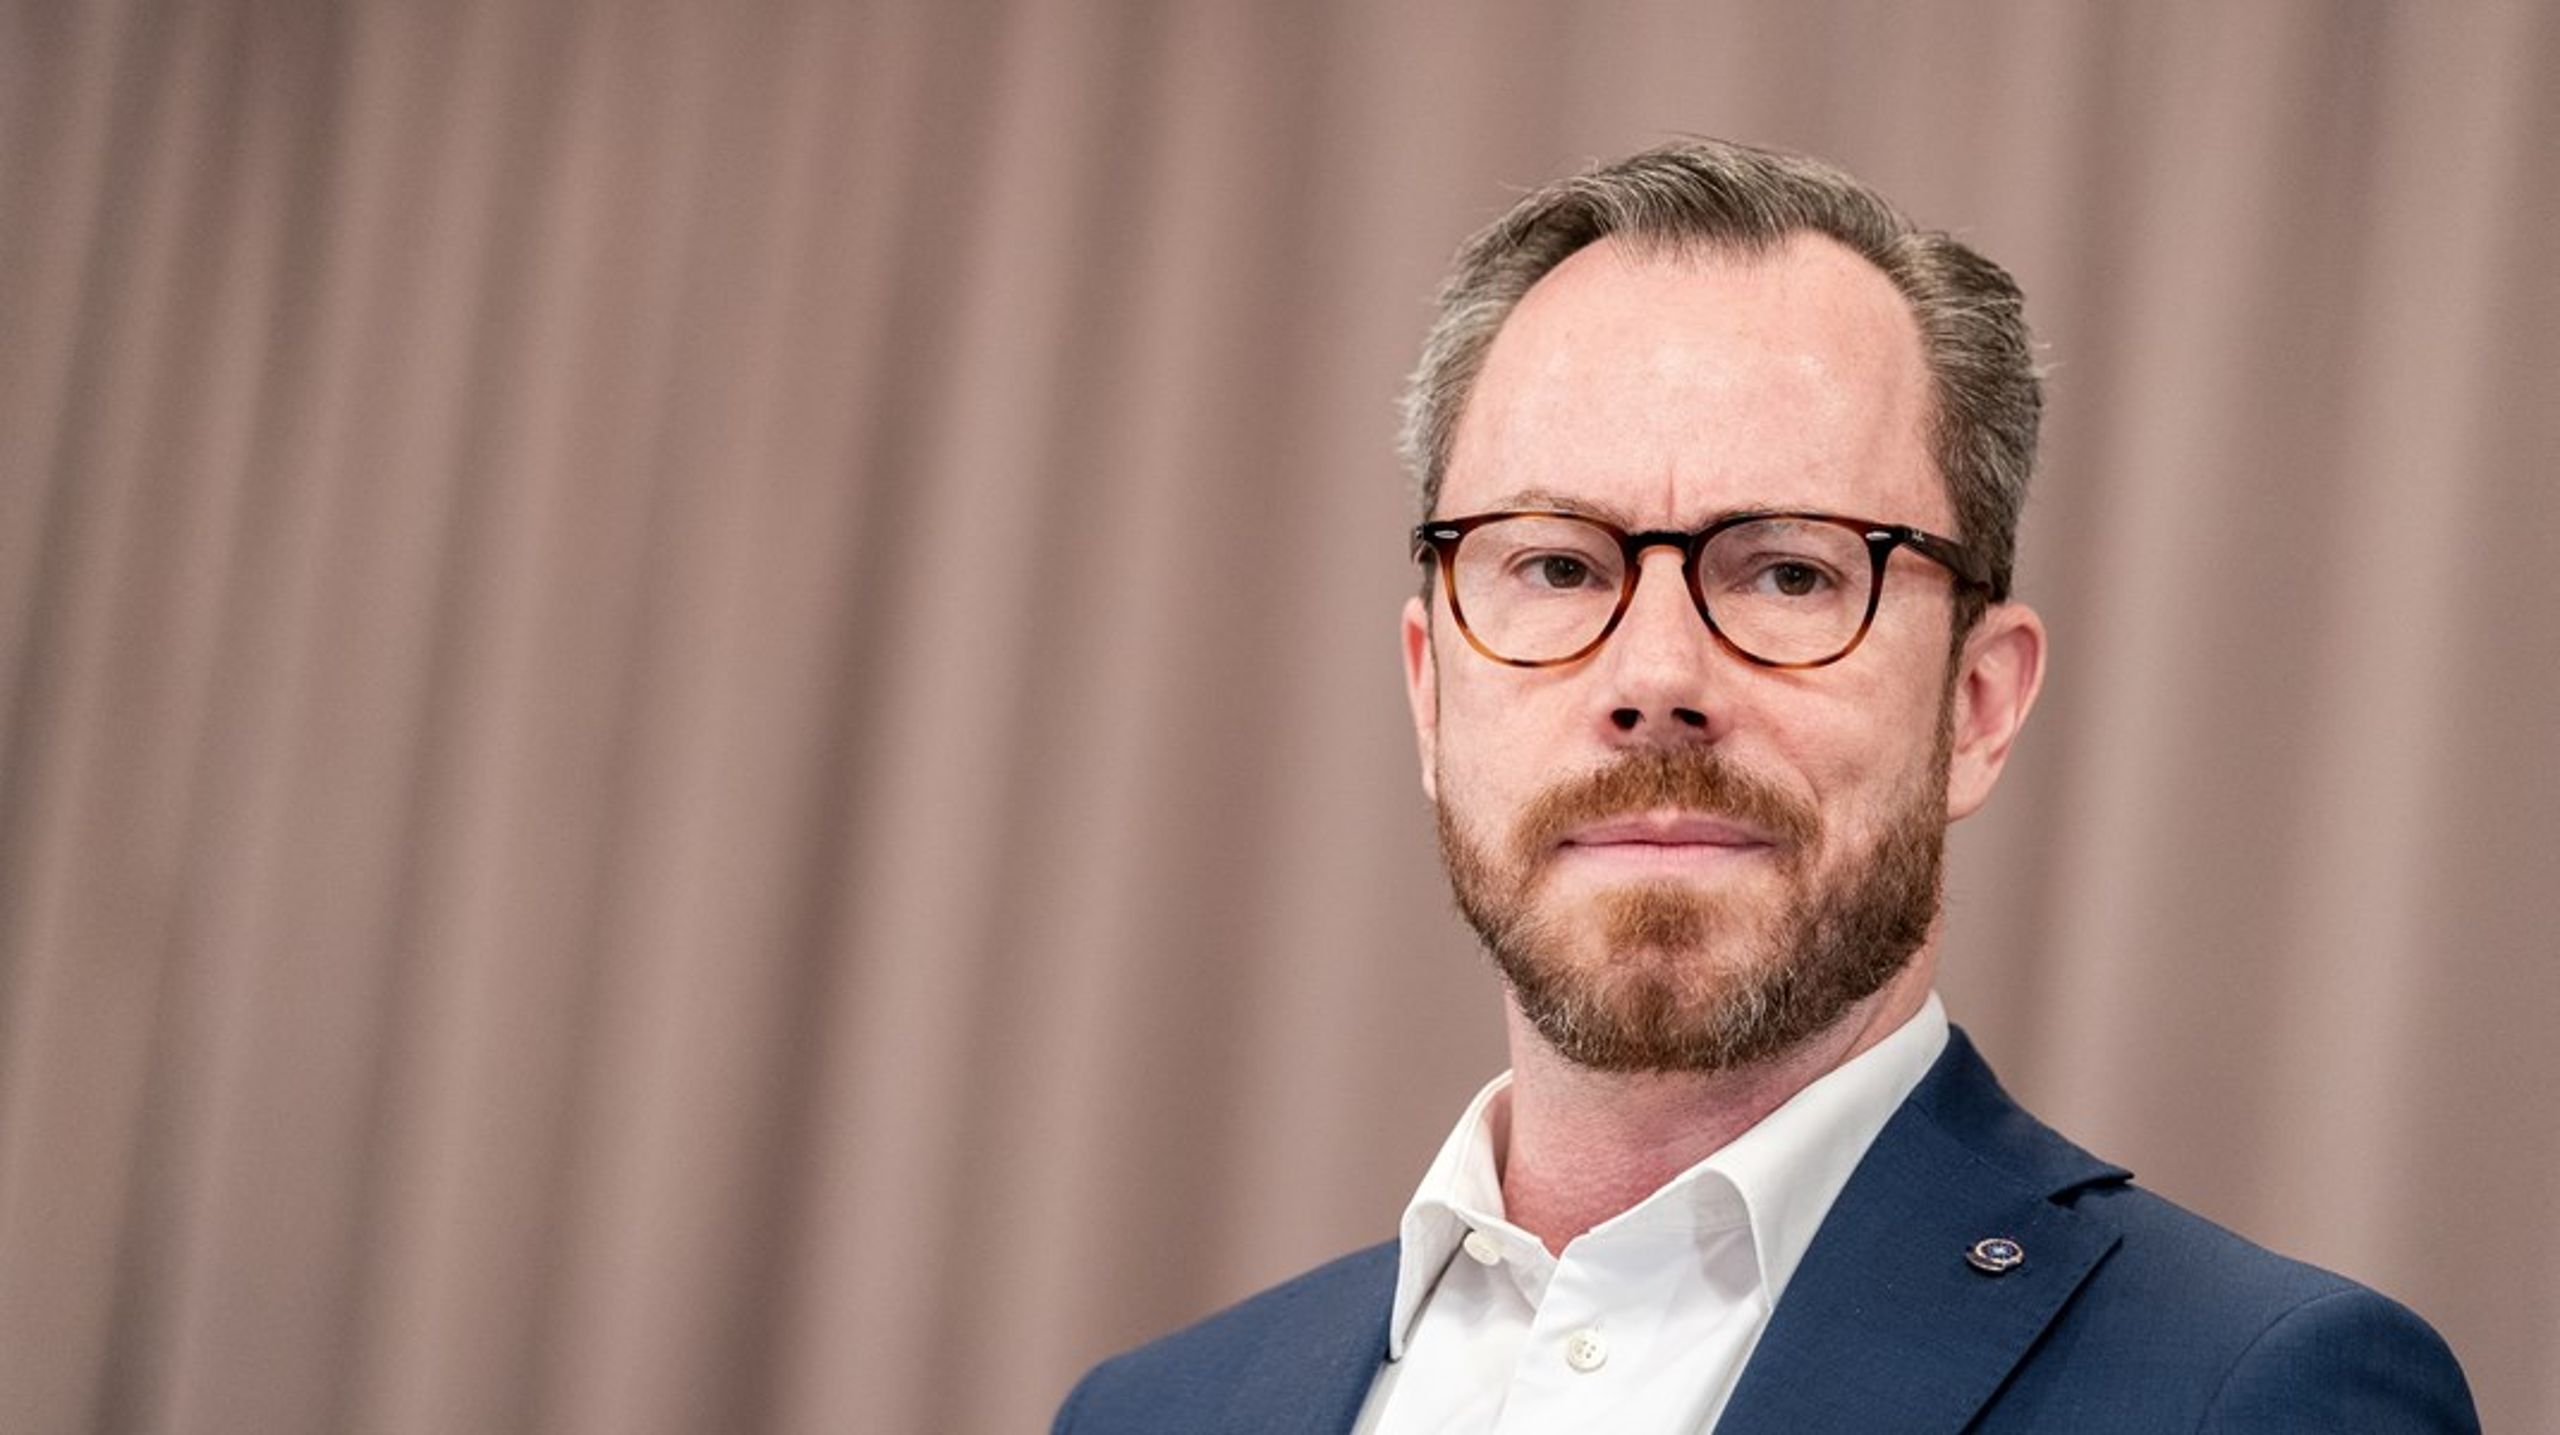 Danmarks forsvarsminister, visestatsminister og partileder for Venstre, Jakob Ellemann-Jensen, er sykmeldt på grunn av høy arbeidsbelastning.